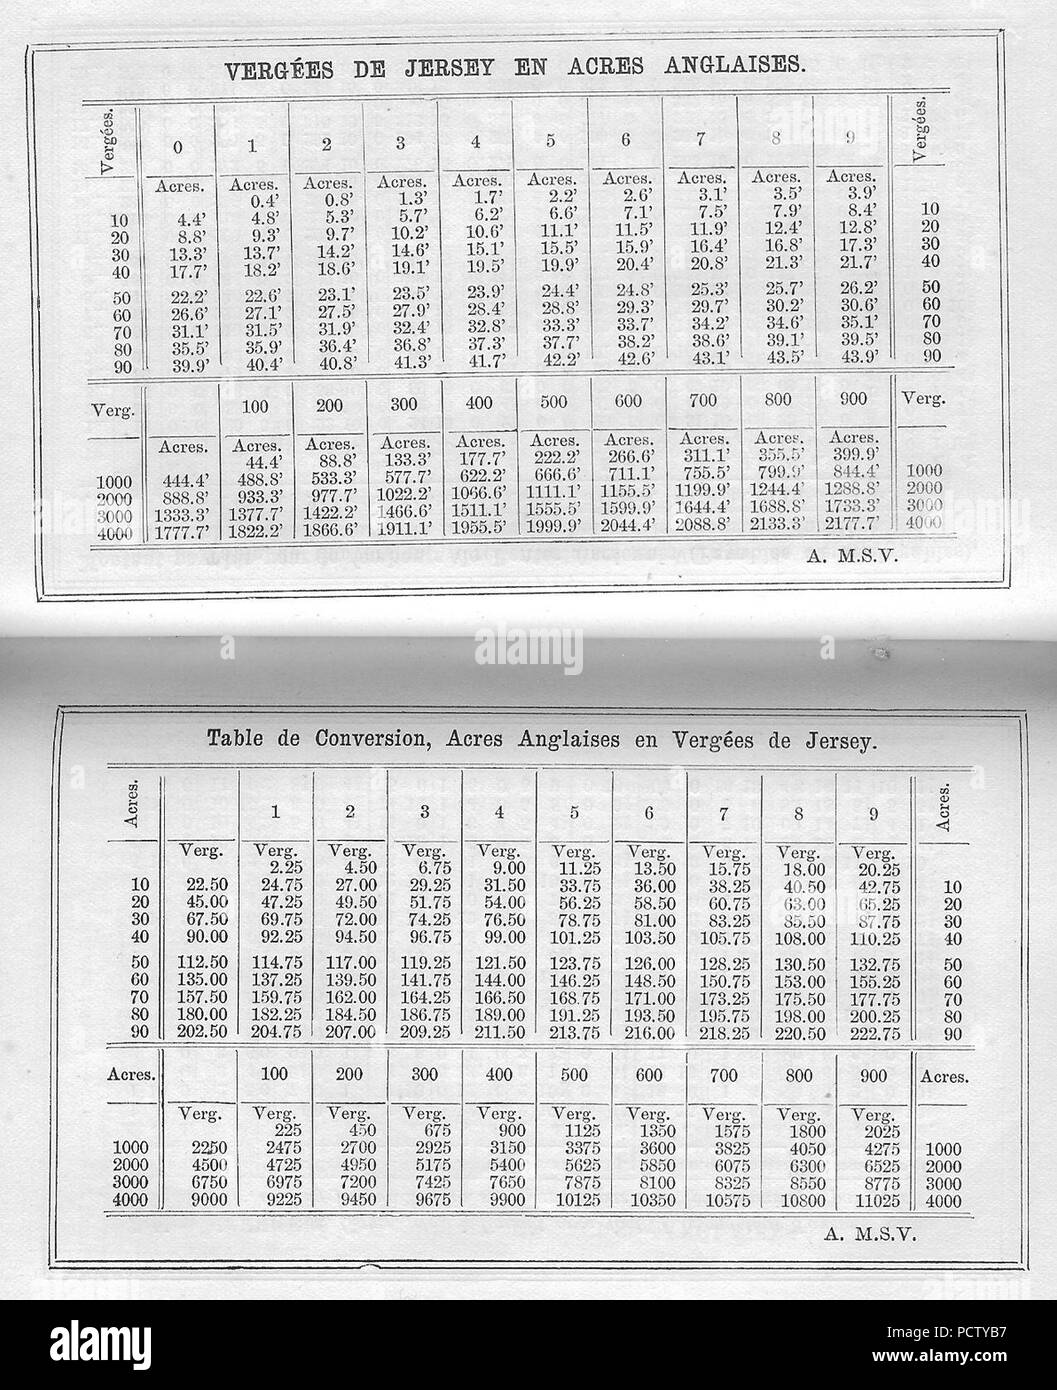 Almanach Nouvelle Chronique de Jersey 1891 vergees acres conversion table  Stock Photo - Alamy